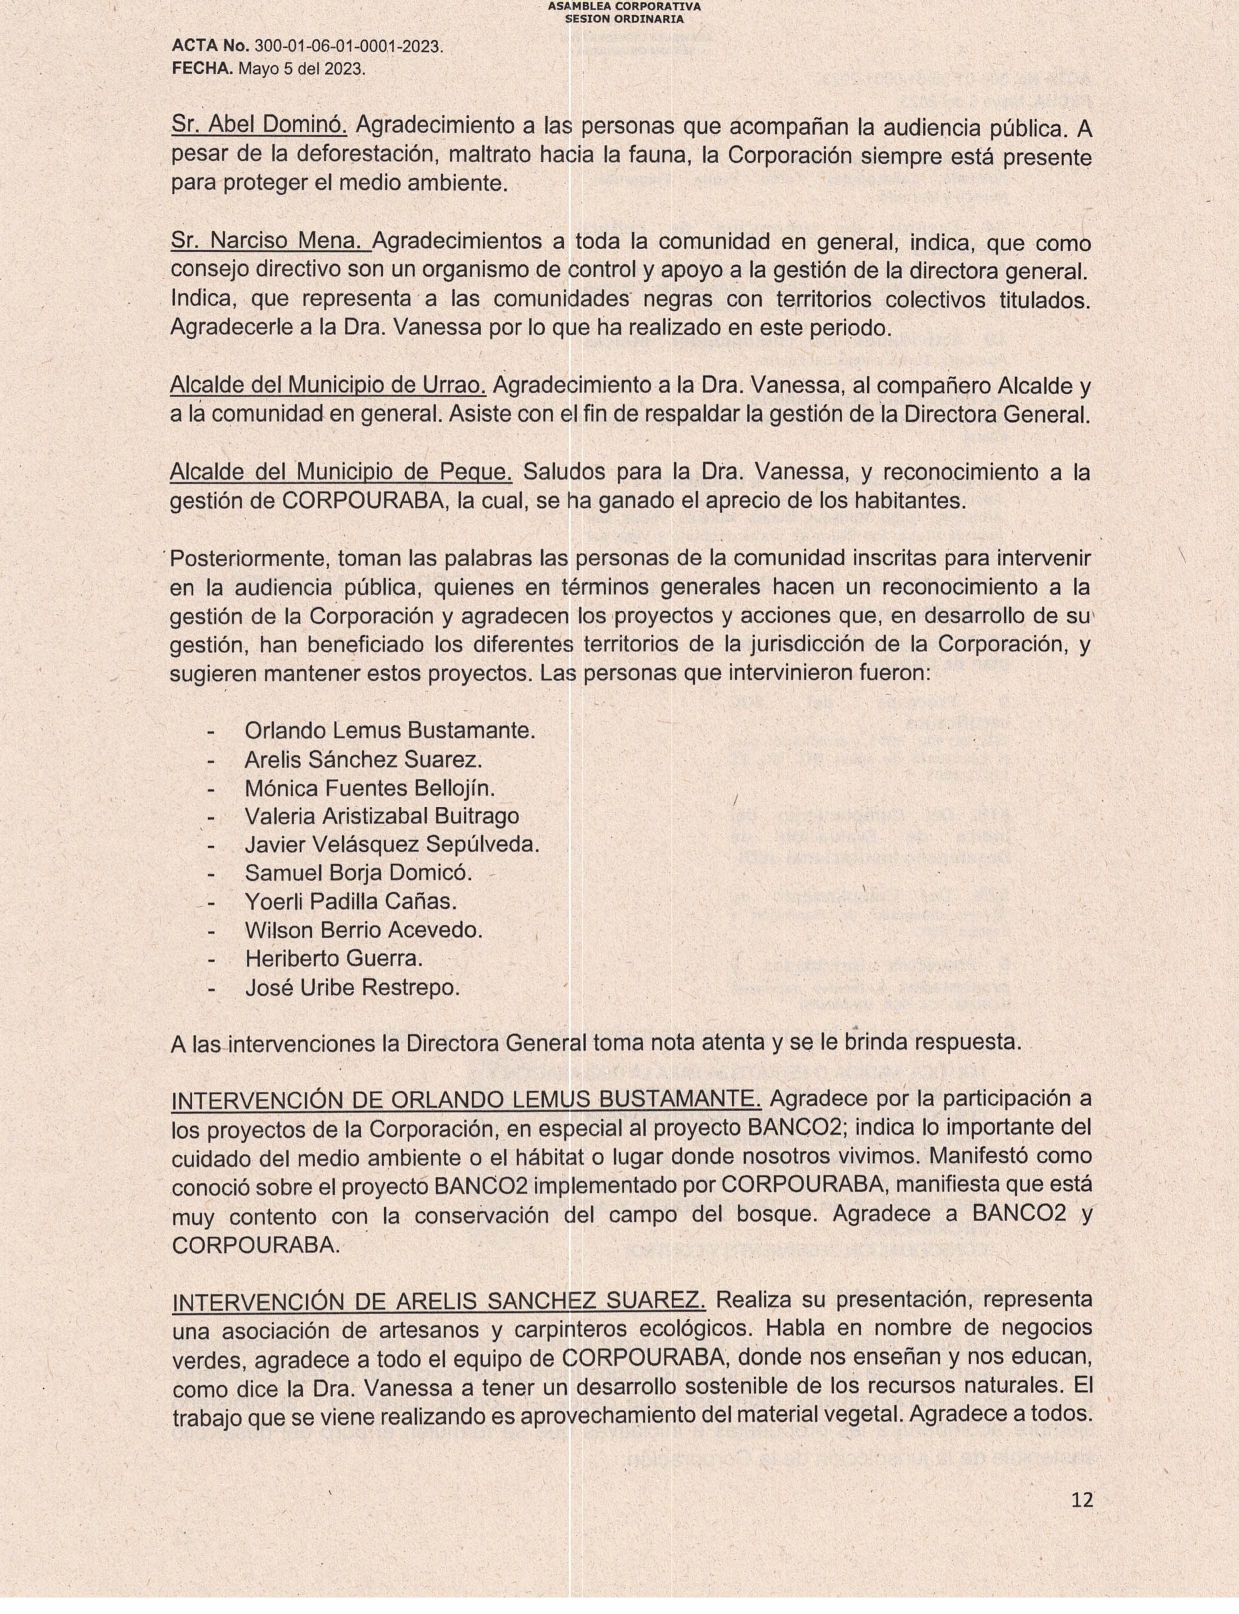 ACTA-0001-RENDICION-CUENTAS-2022_page-0012